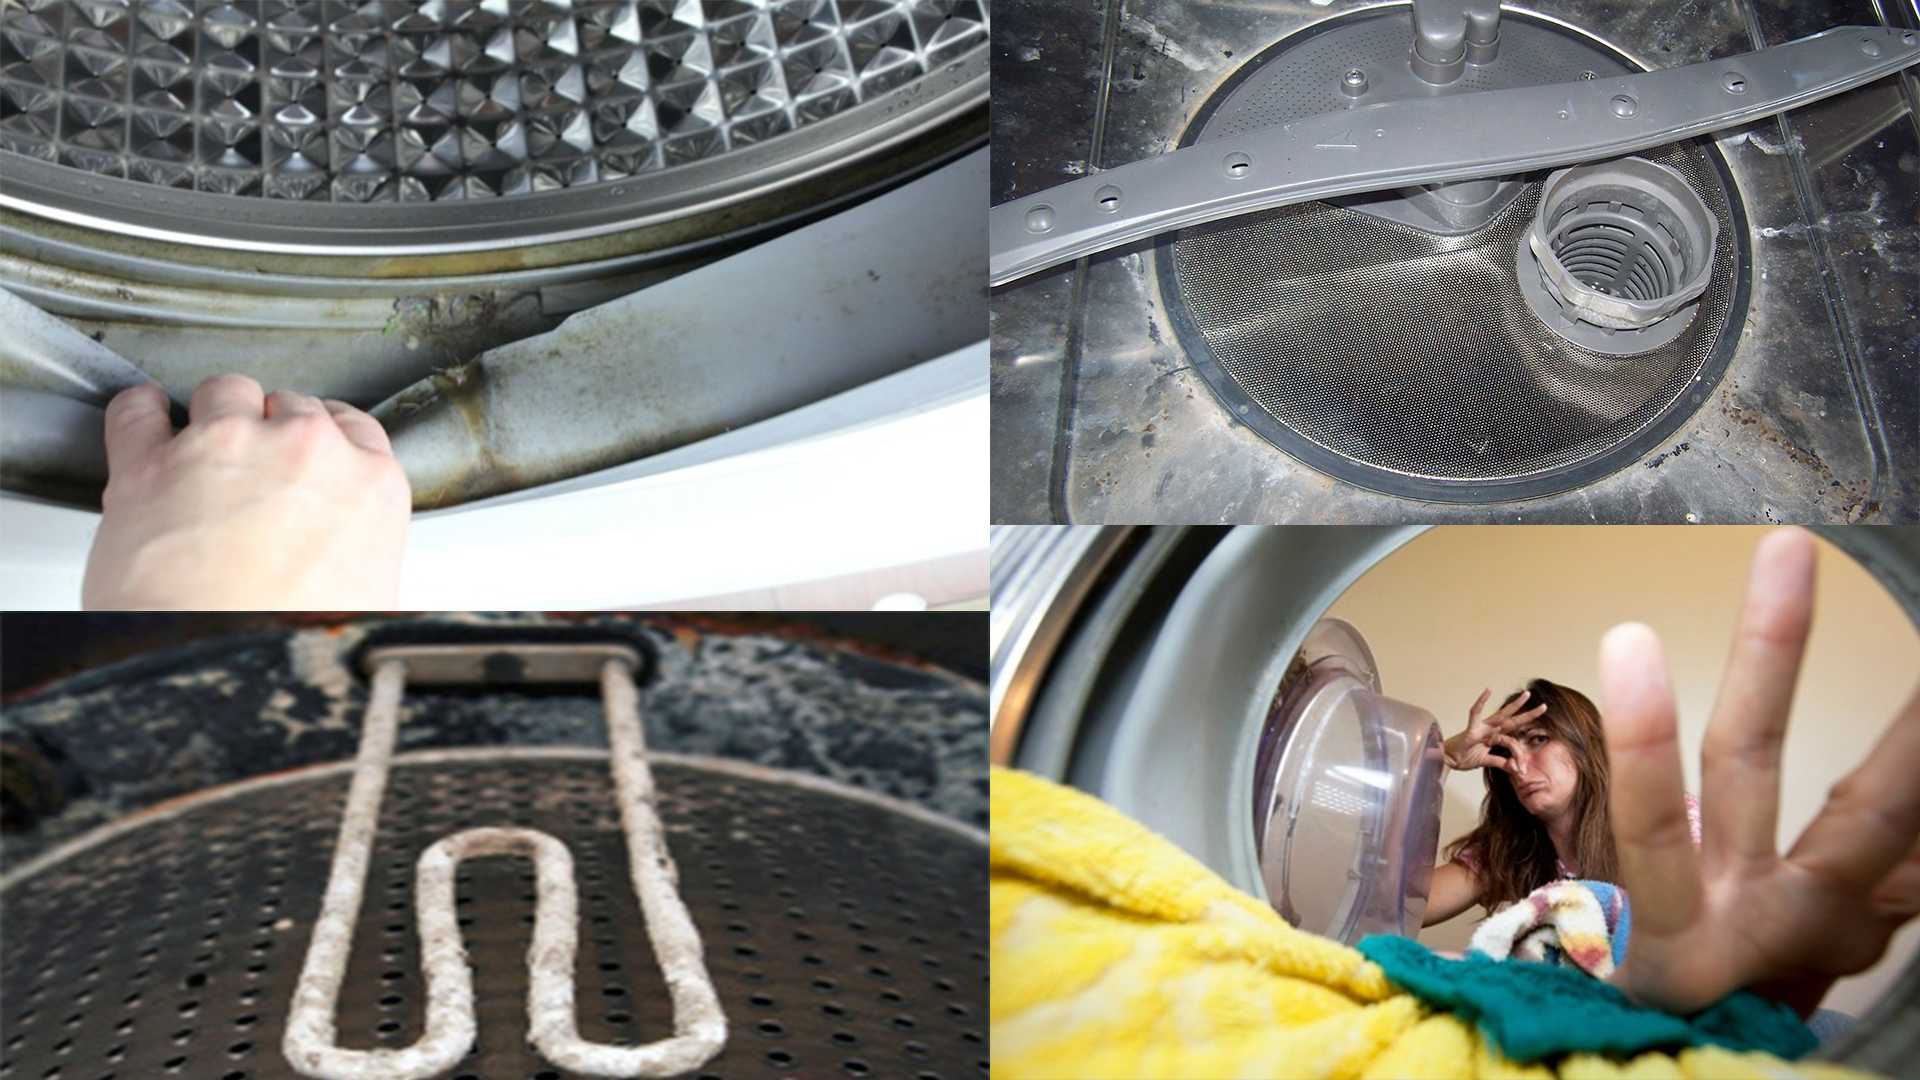 3 способа, которые помогут убрать запах из стиральной машины. как избавиться от запаха из стиральной машинки сила знания